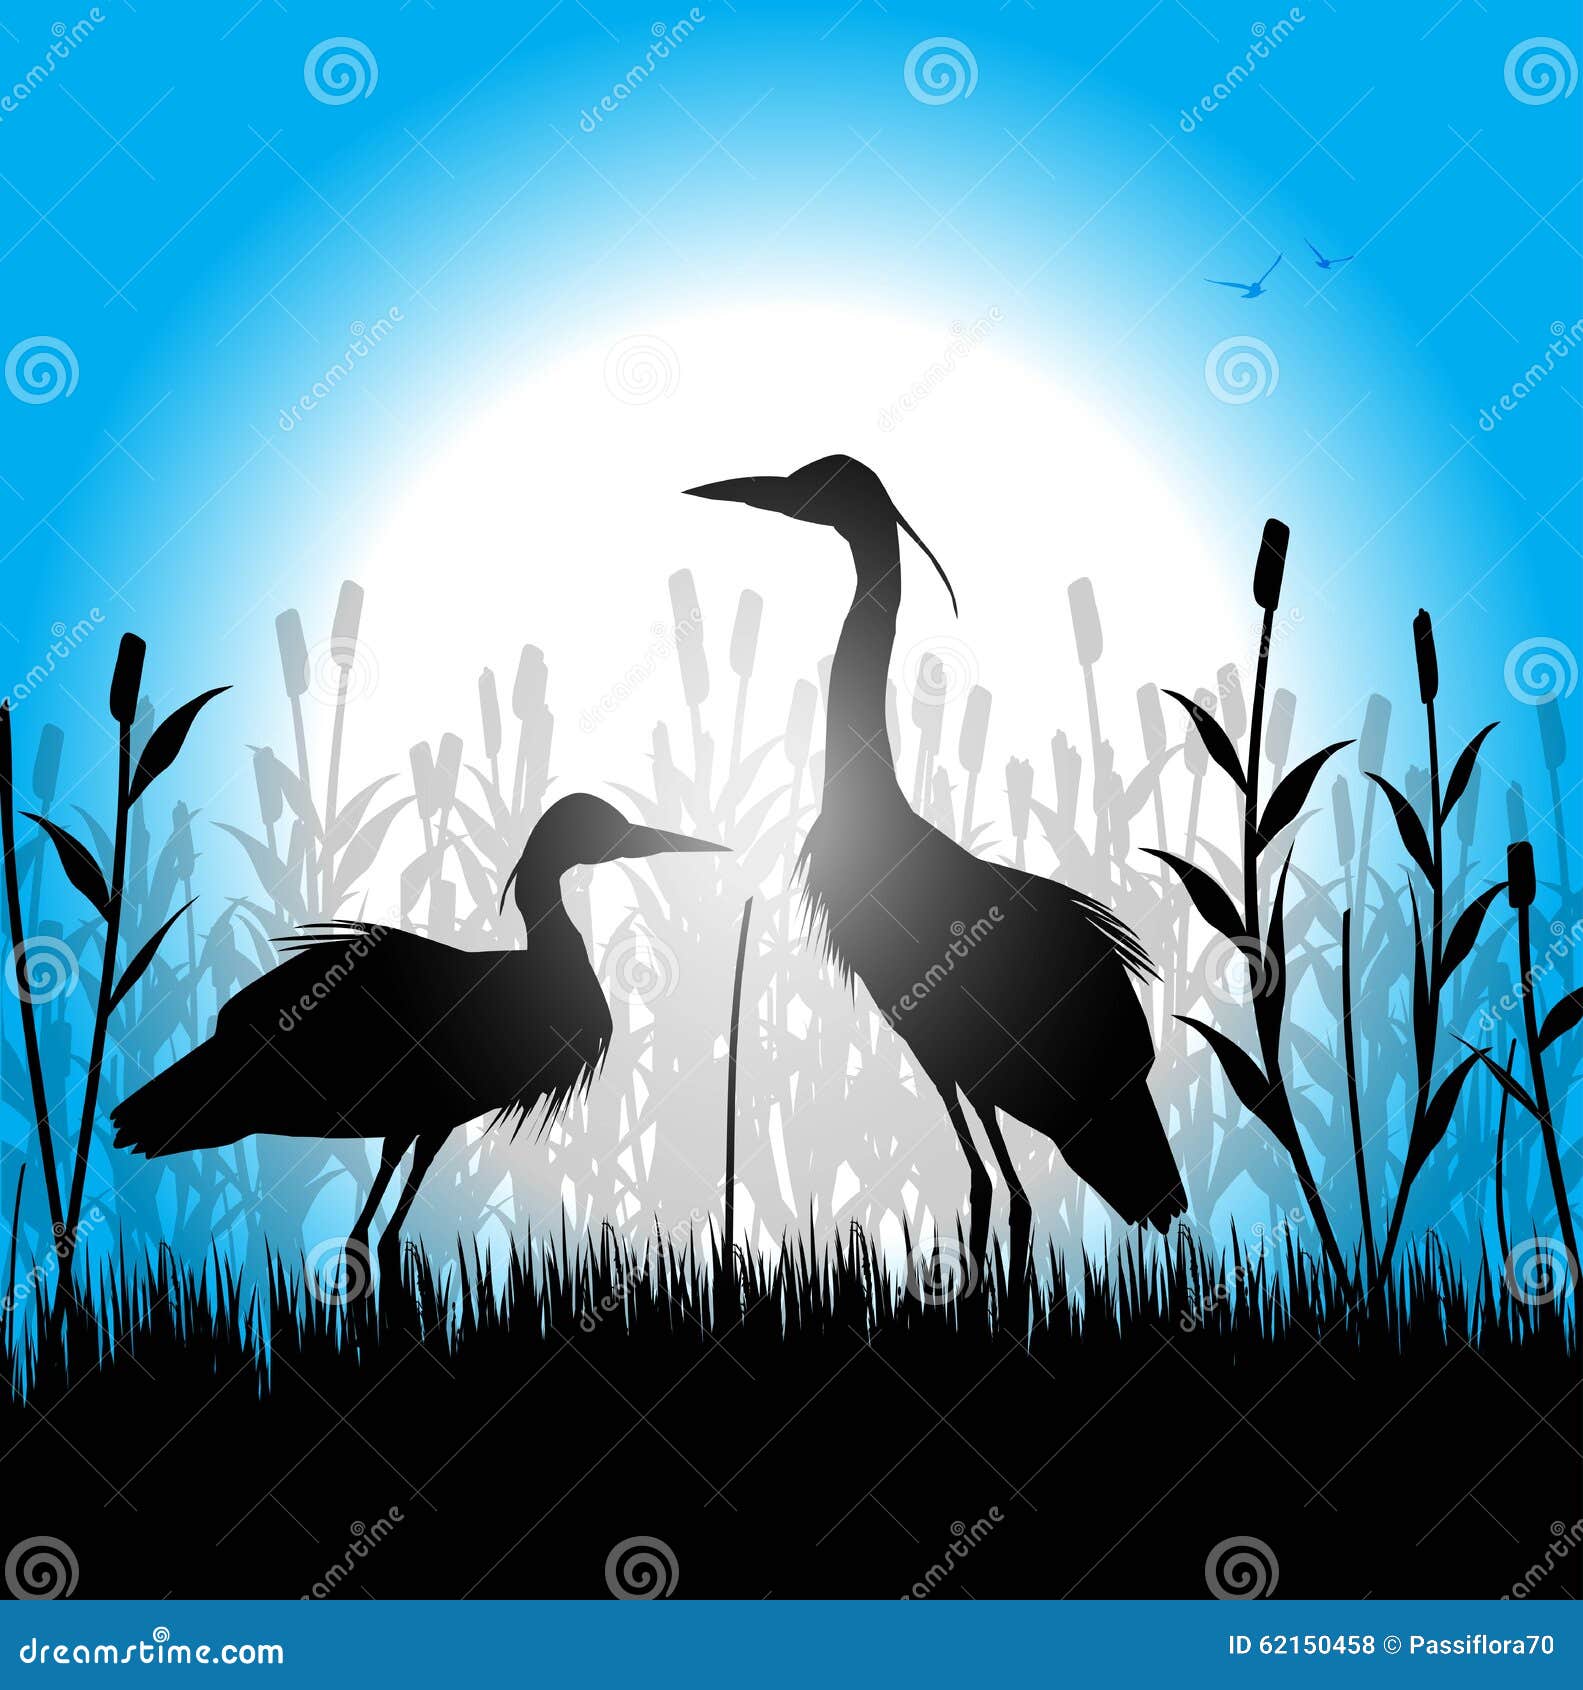 silhouette of herons in the marsh